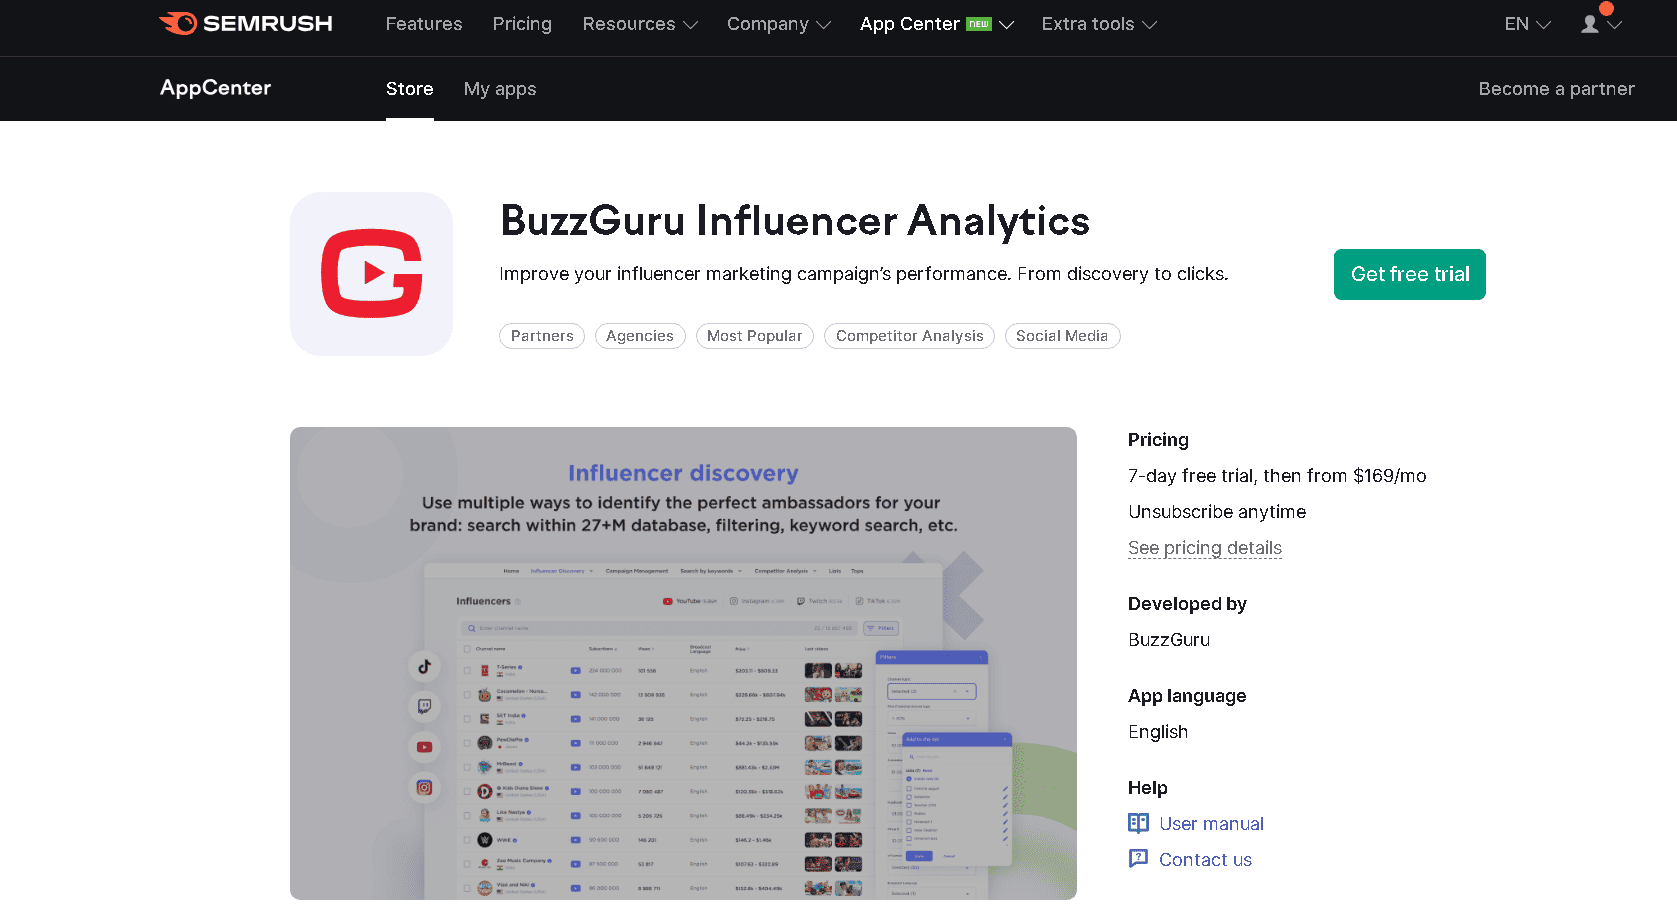 Buzzguru Influencer Analytics